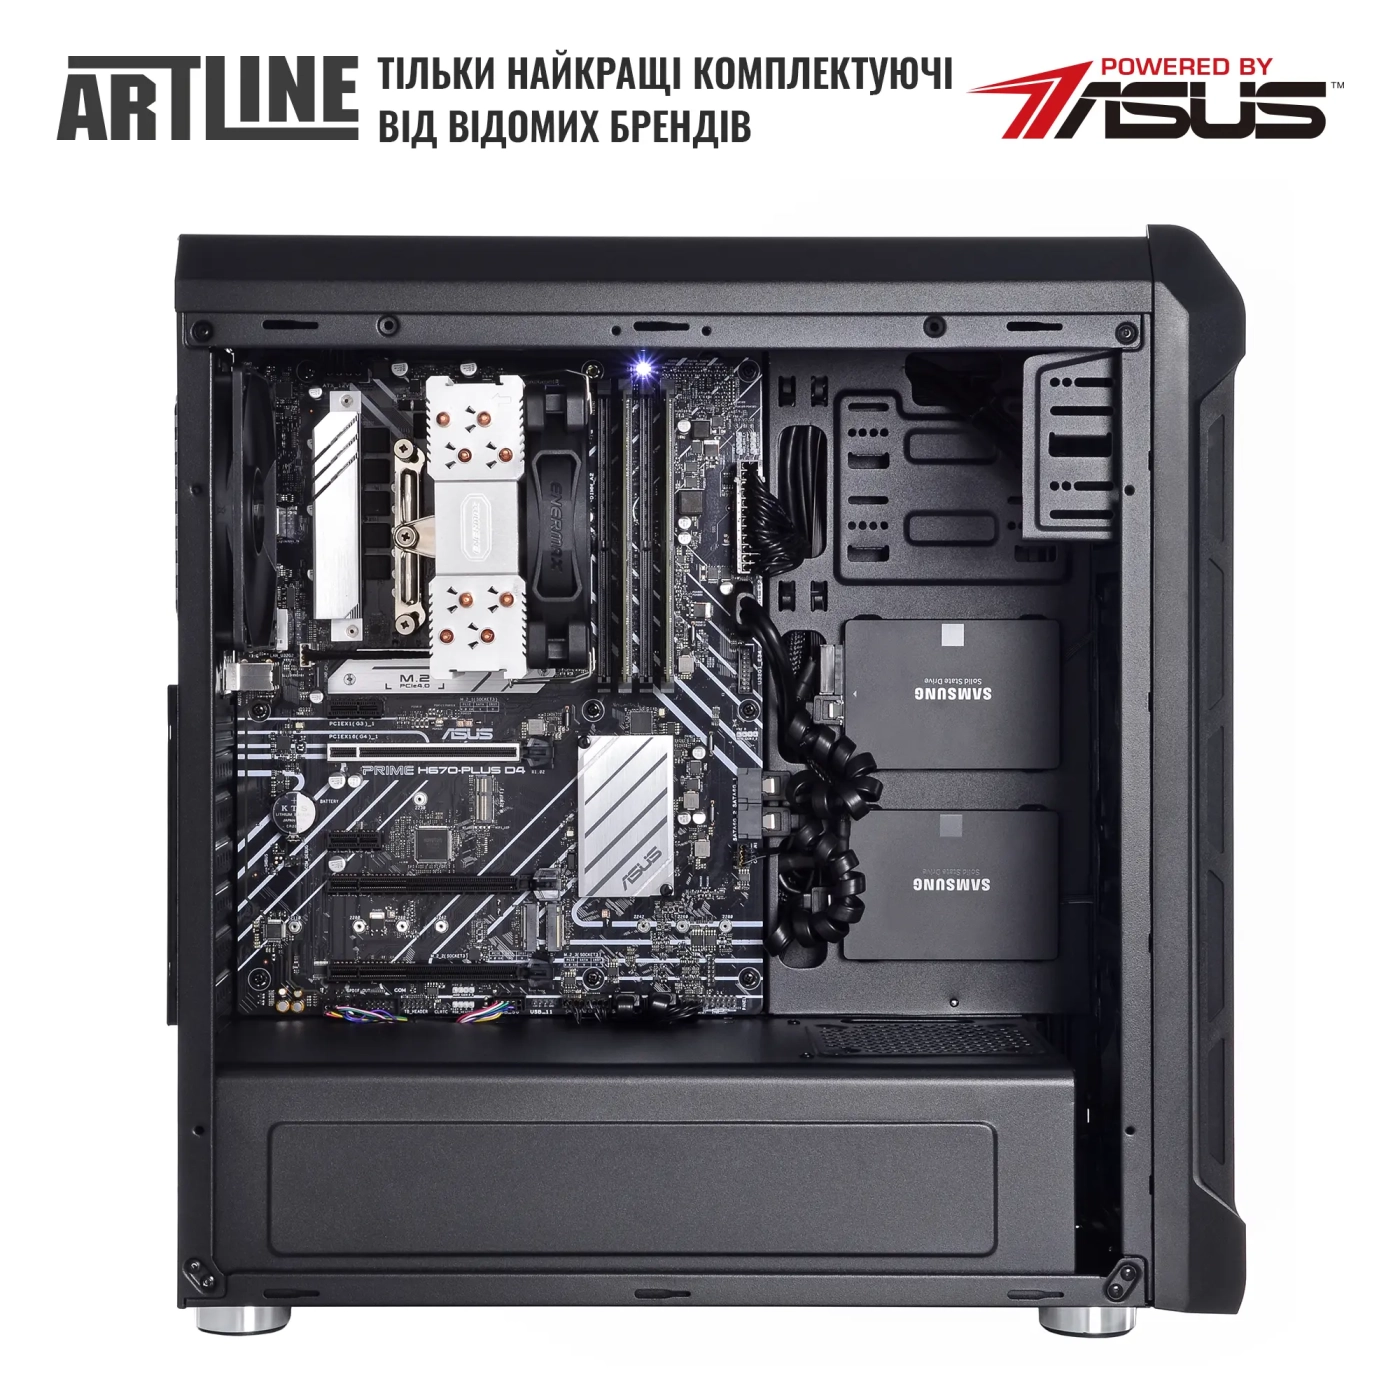 Купить Сервер ARTLINE Business T25 (T25v44) - фото 4